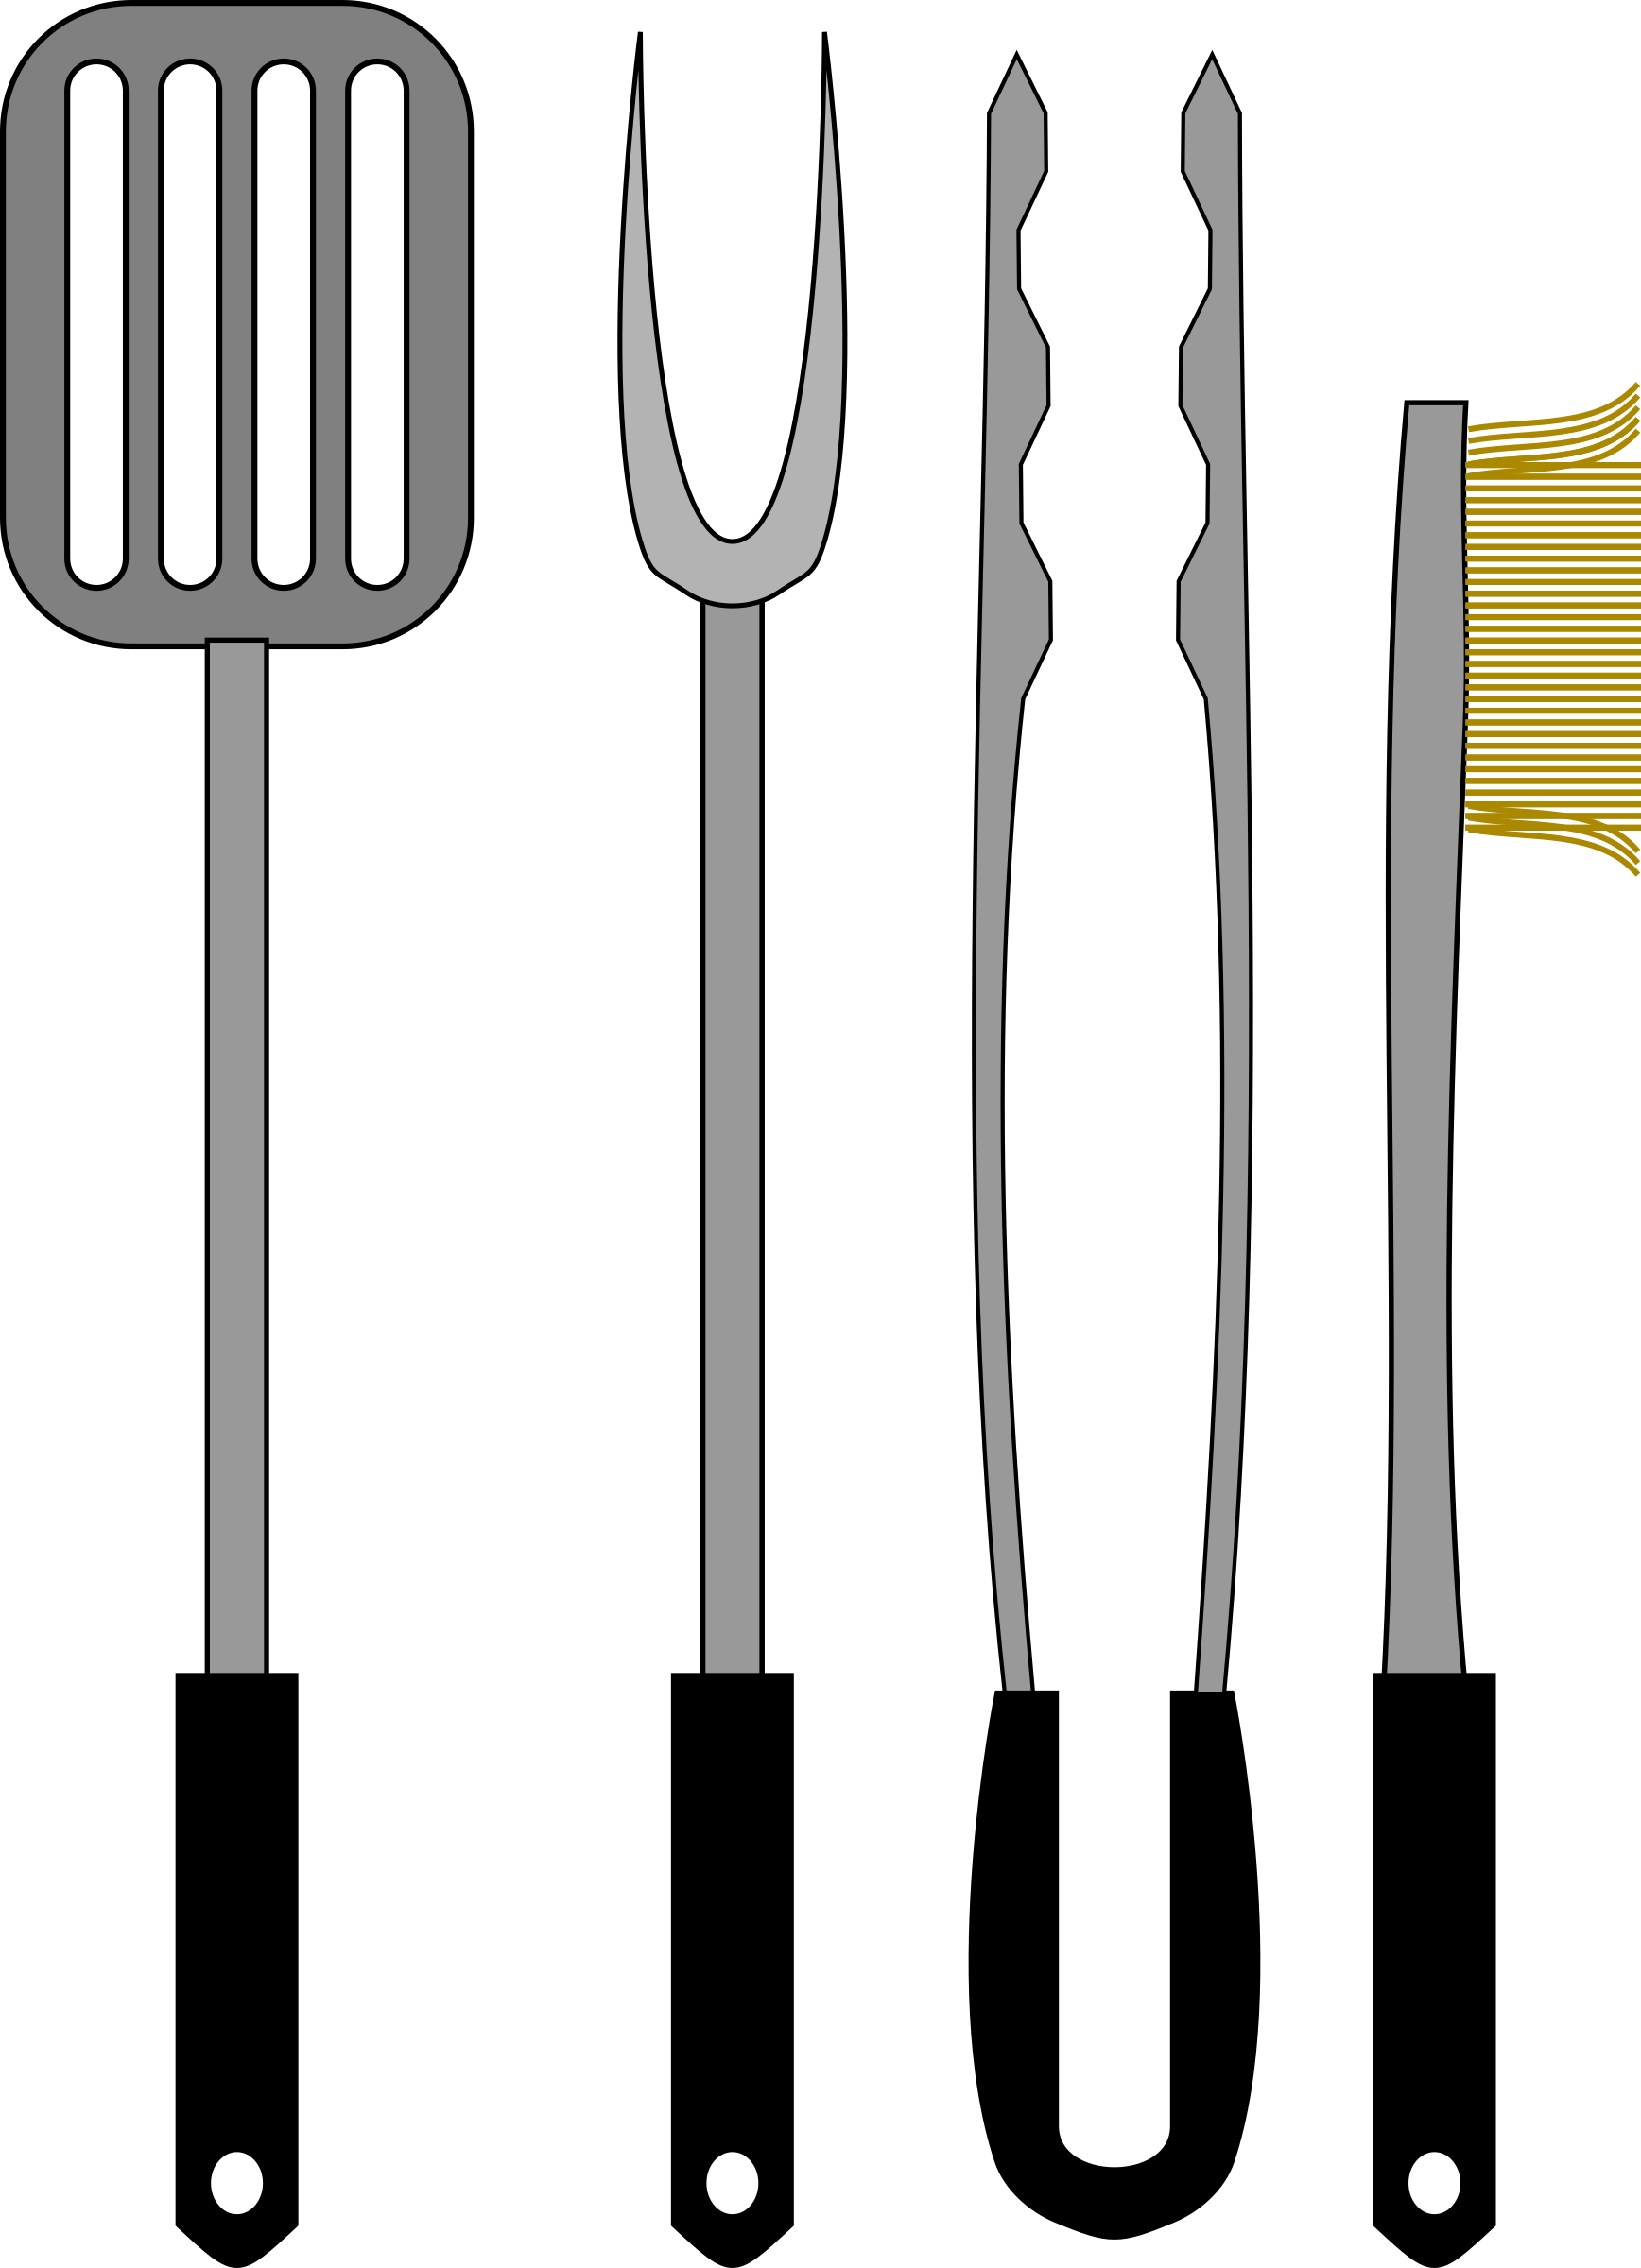 bbq utensils vector